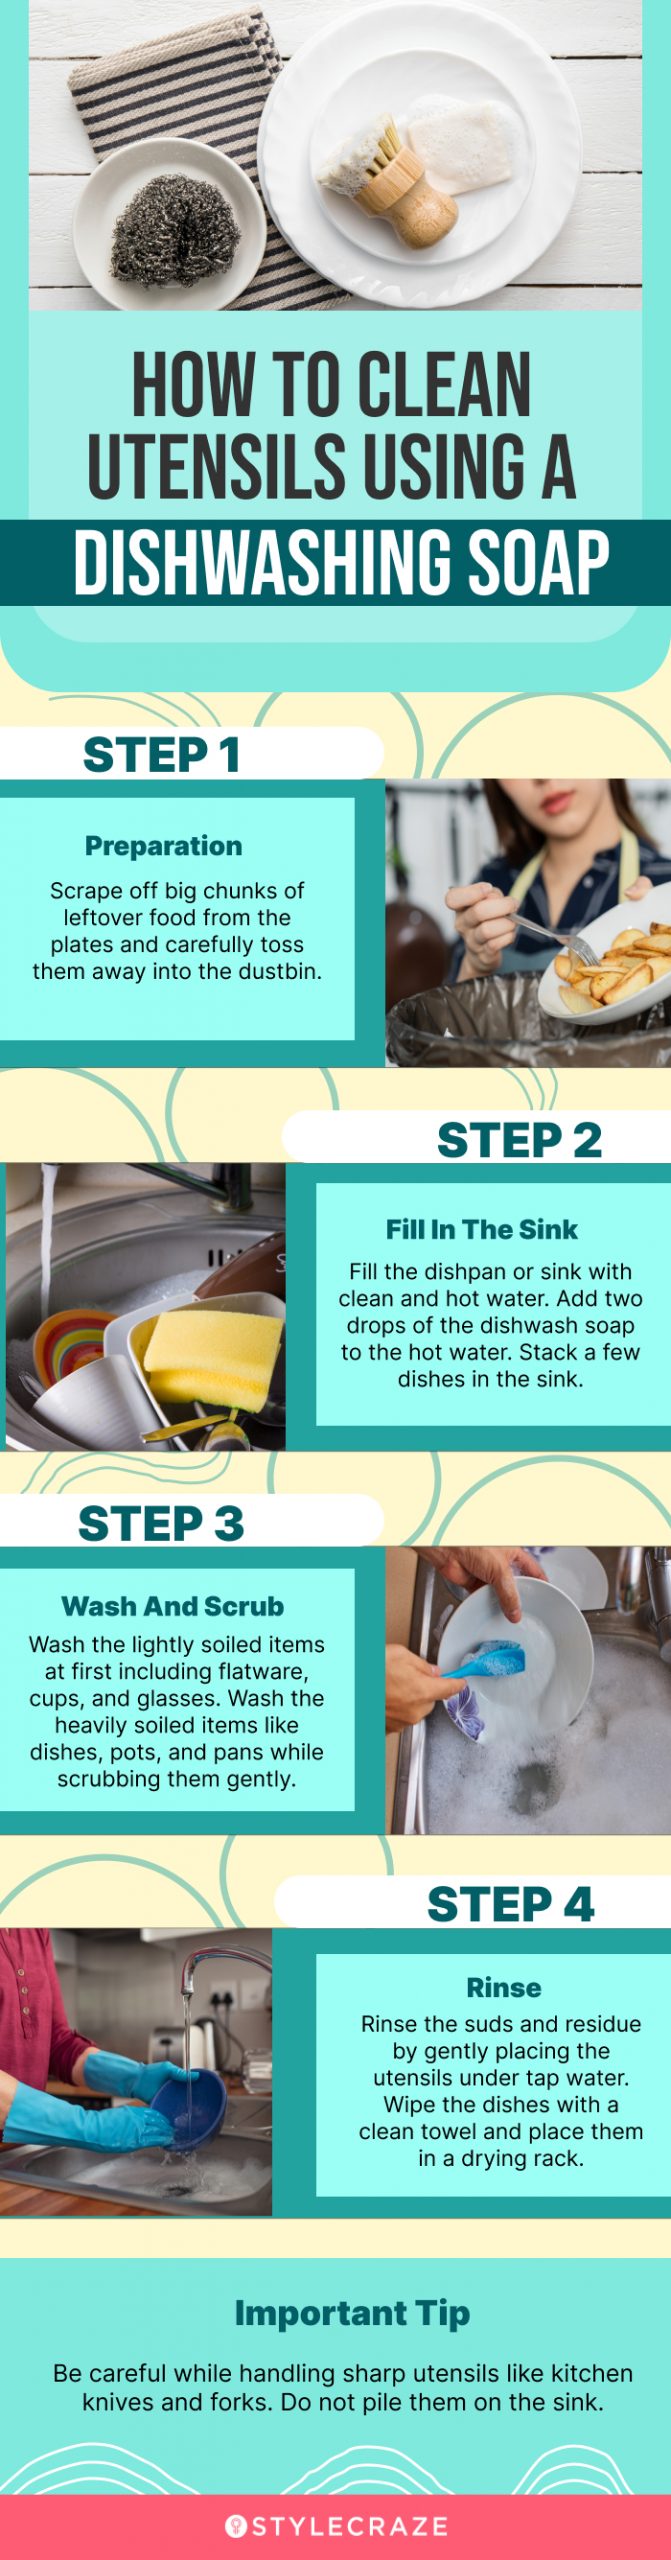 10 Dishwashing Hacks to Effectively & Sustainably Wash Dishes